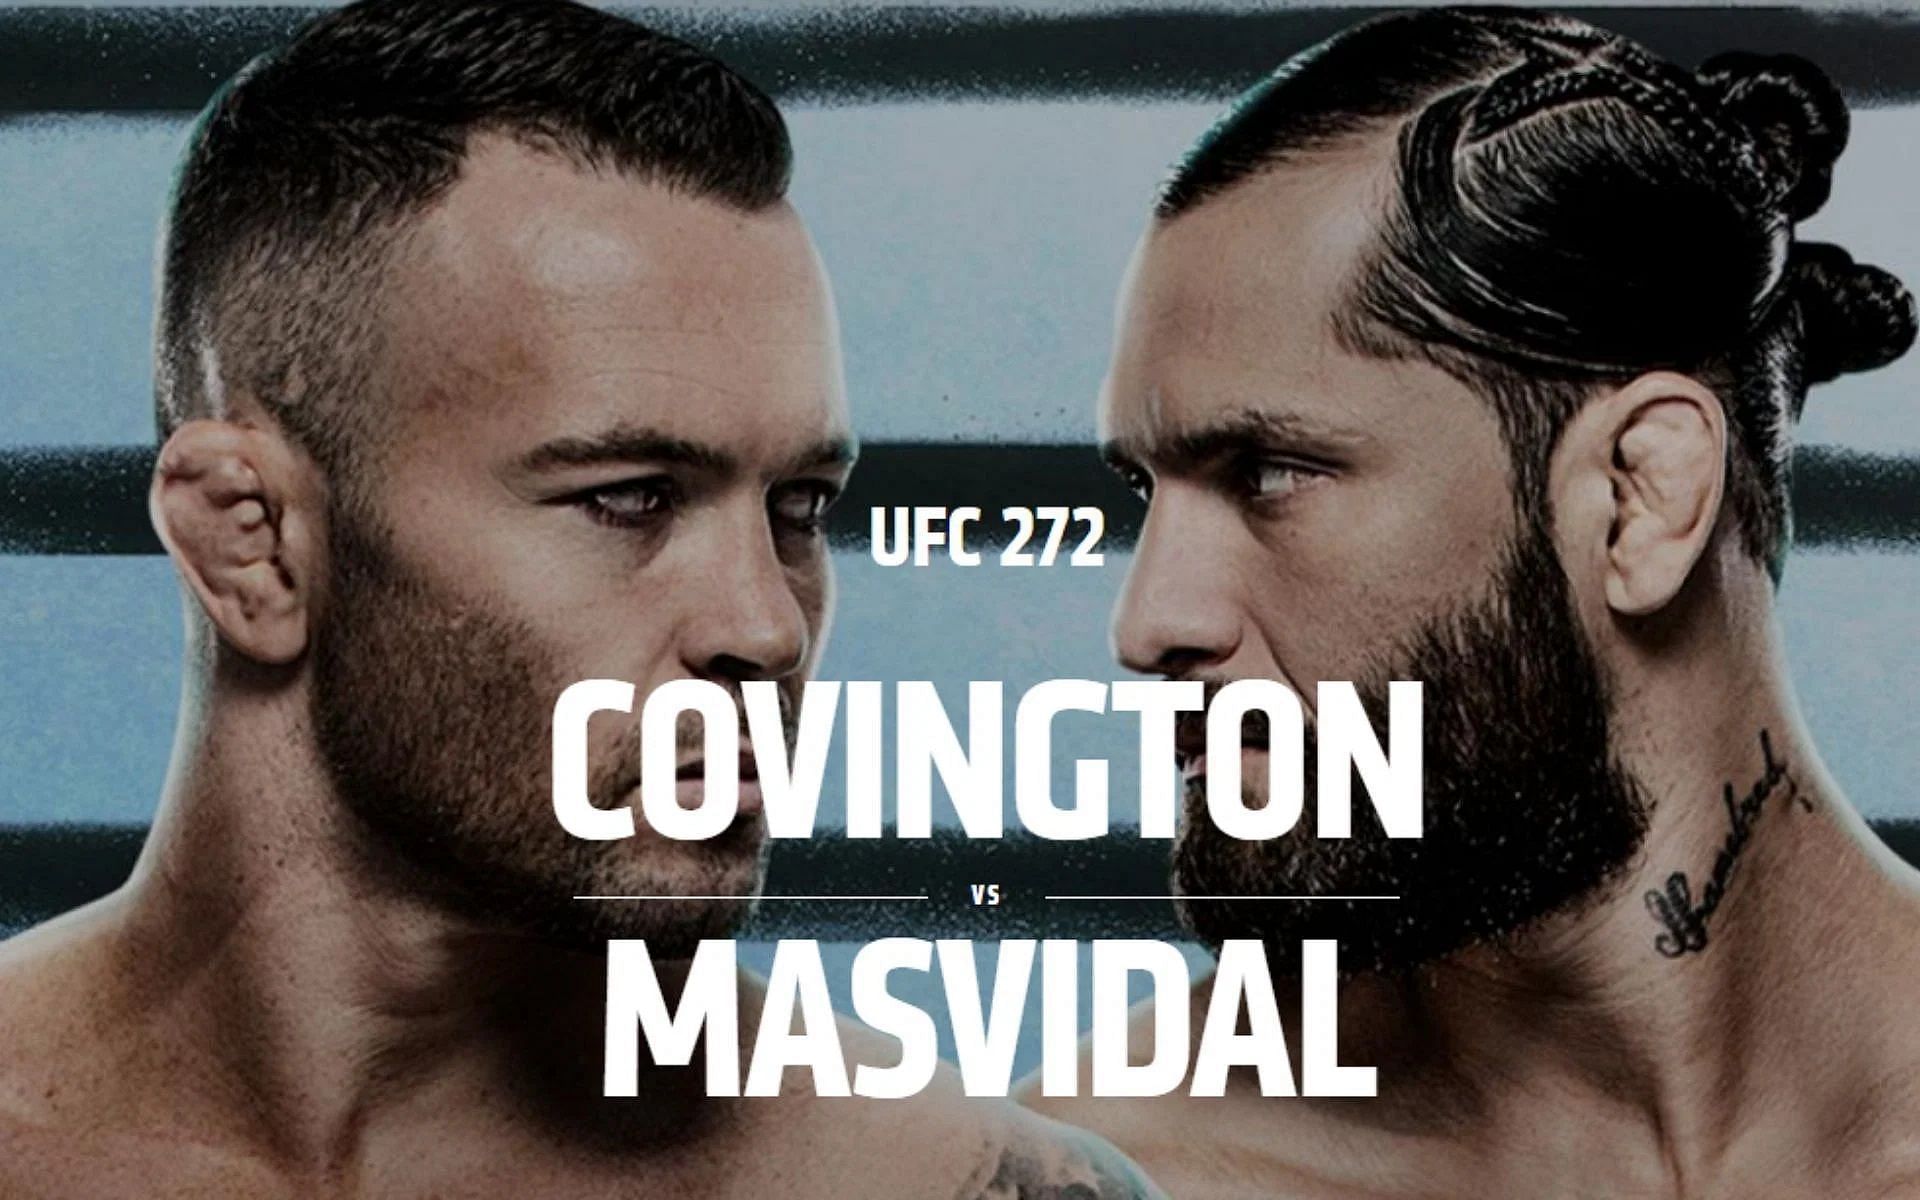 UFC 272: Covington vs Masvidal poster [image courtesy of @ufc on Twitter]